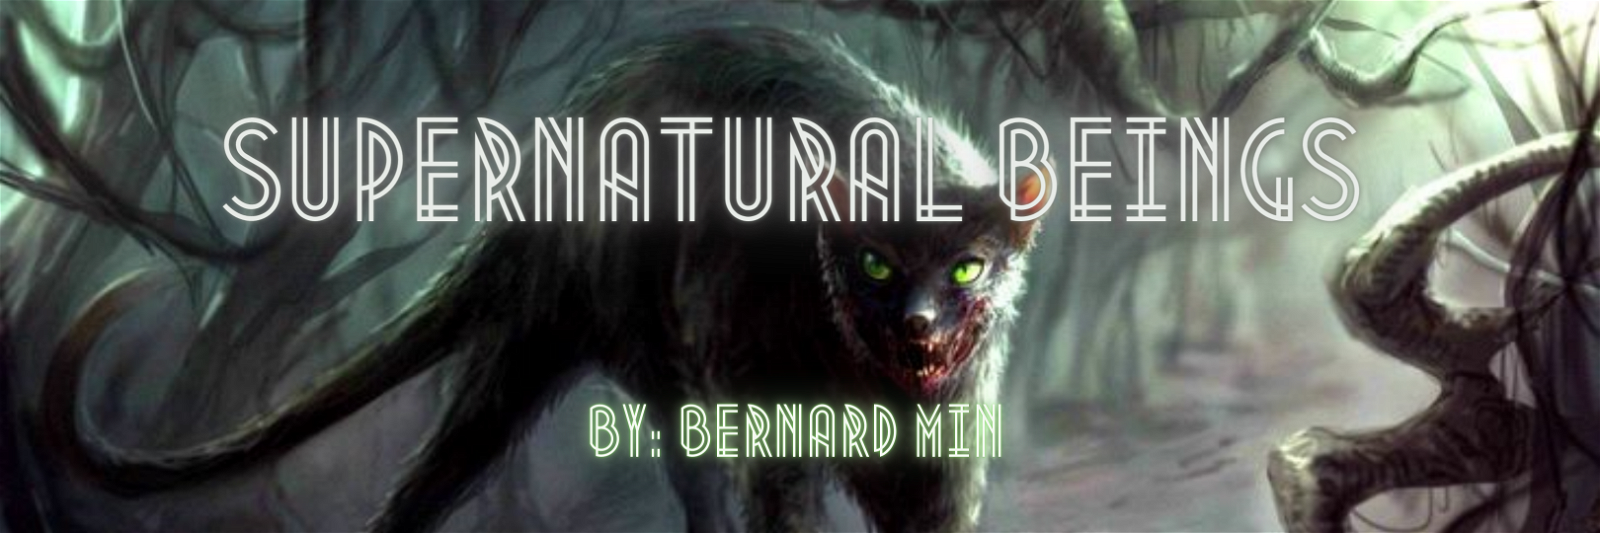 Supernatural Beings by Bernard #7